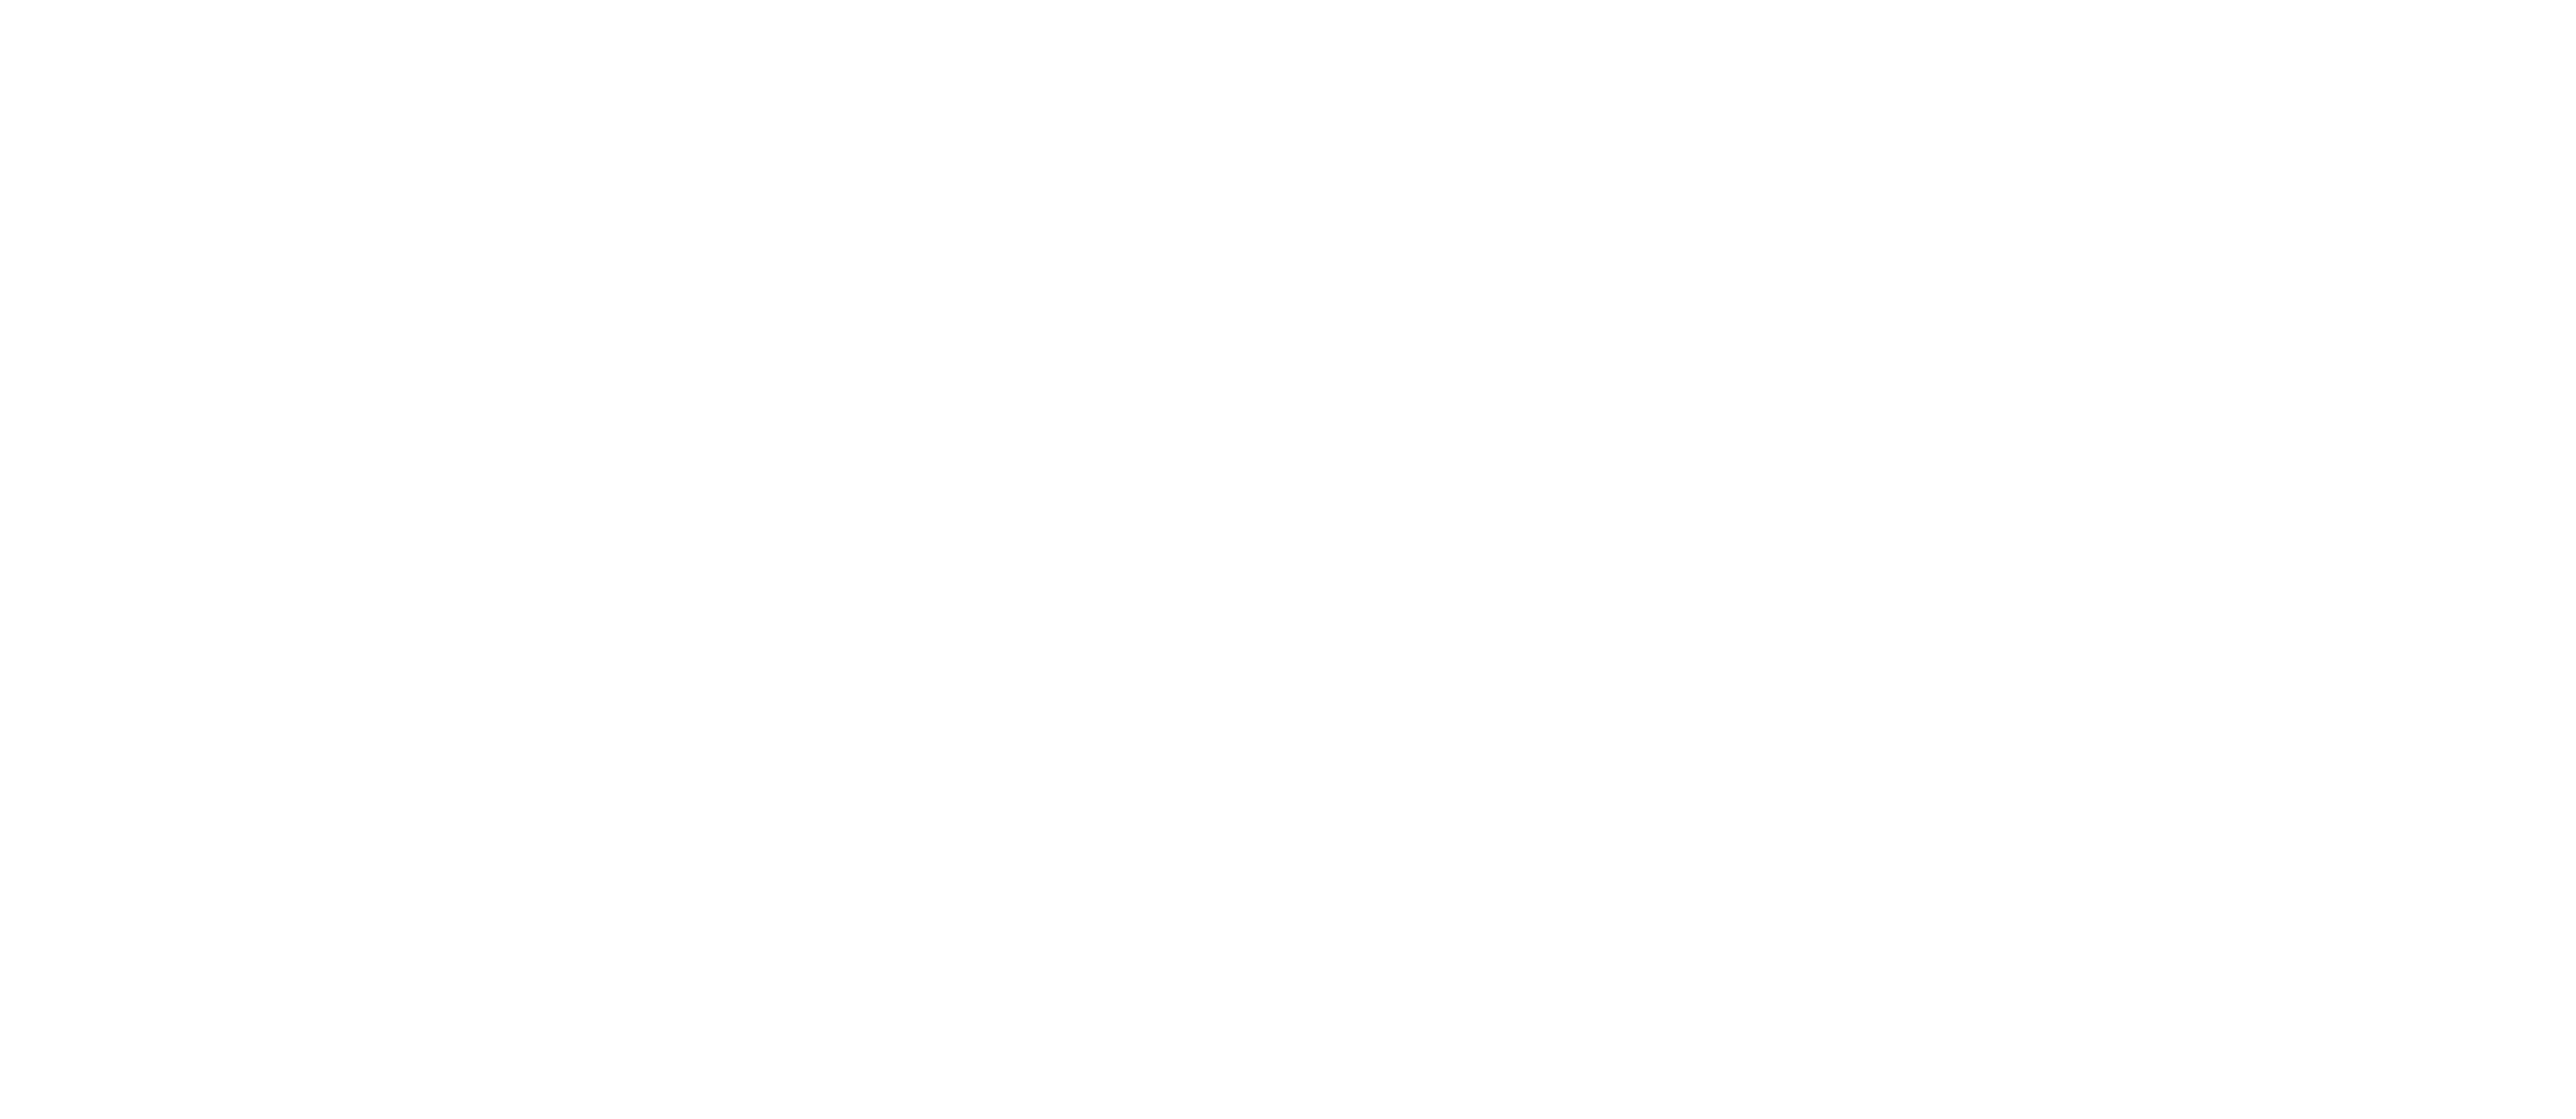 Unite Flooring Cleanrooms logo in white